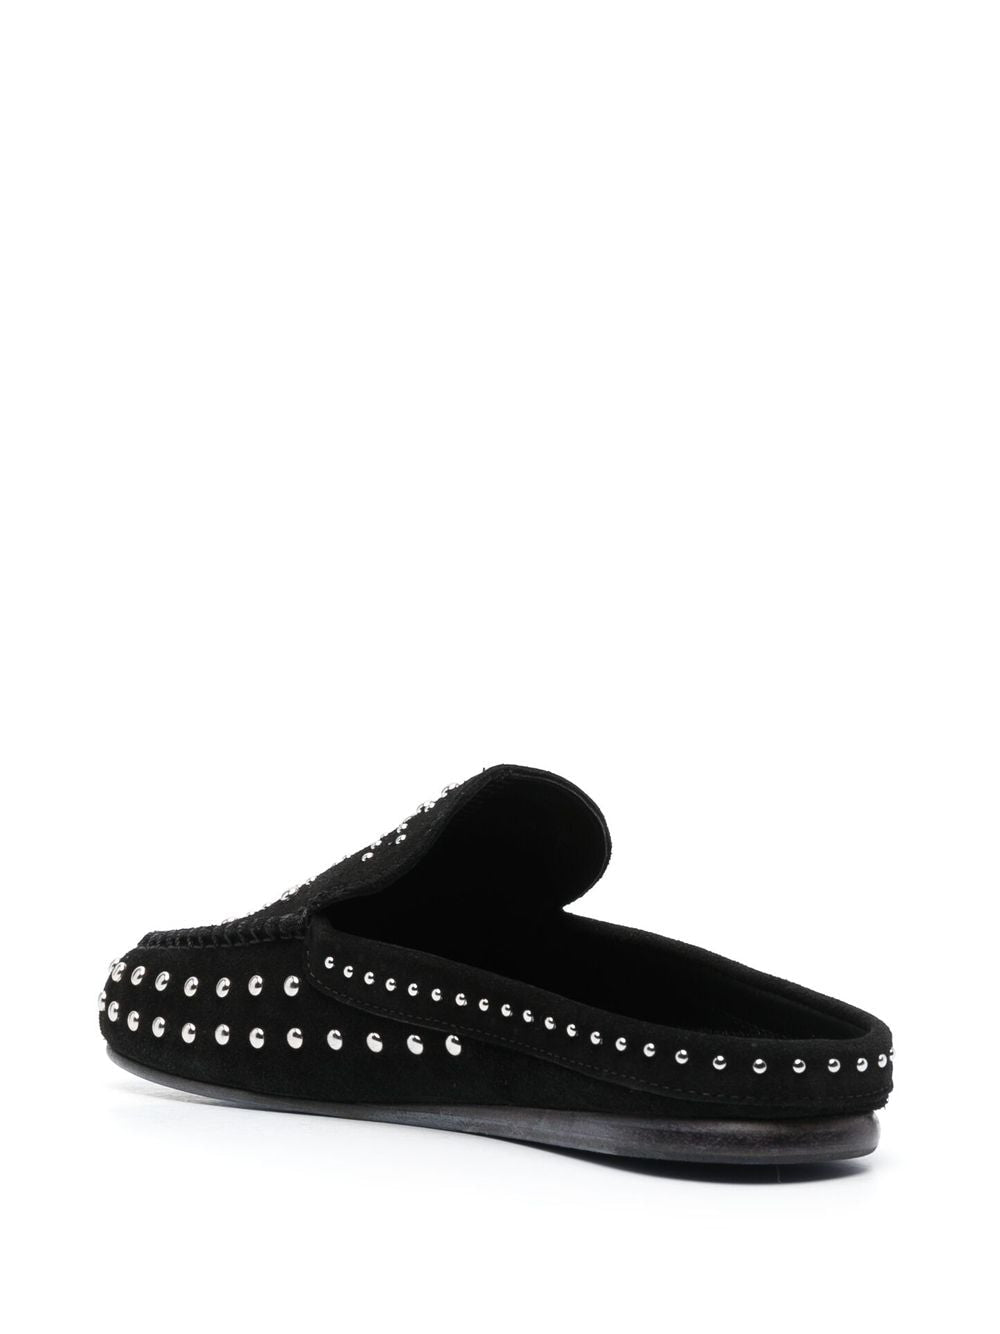 Stud-embellished leather slippers, black